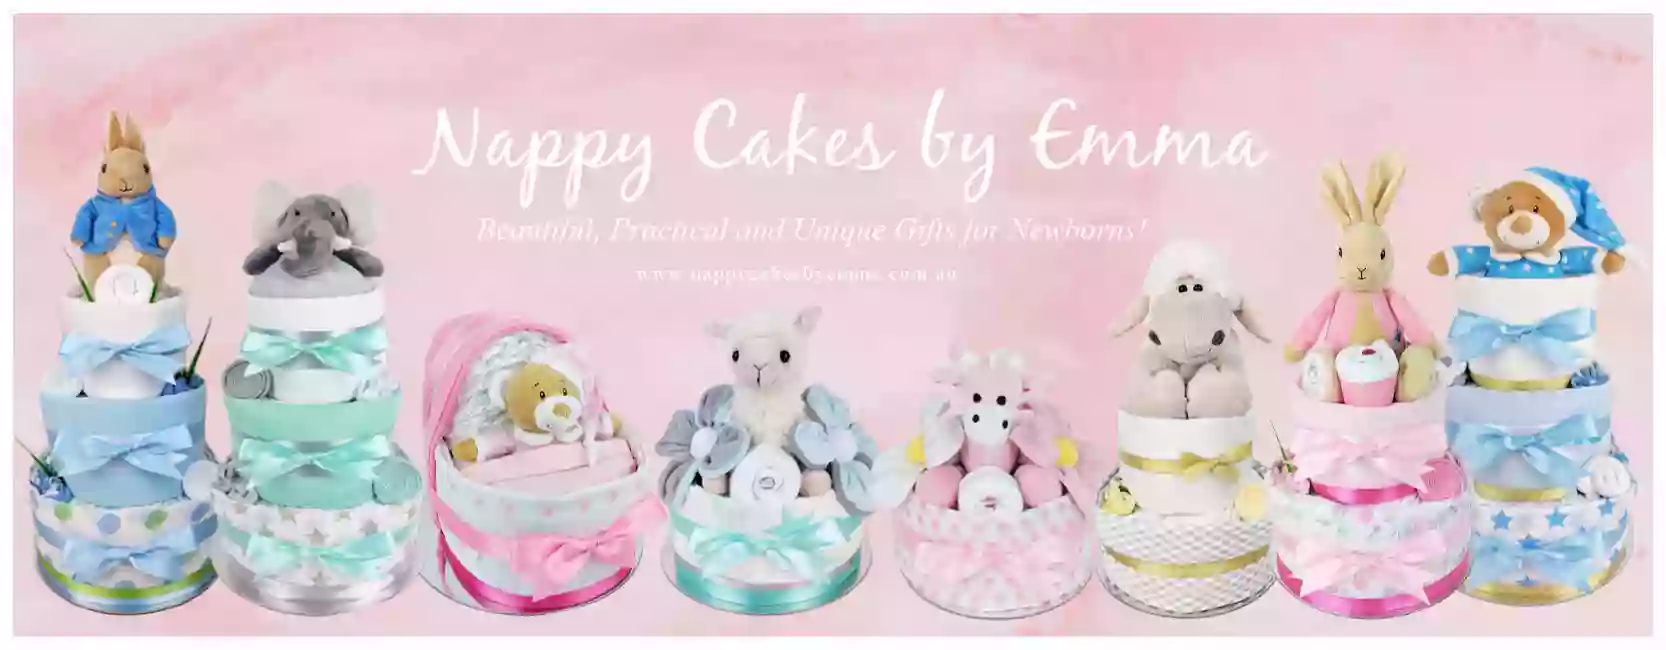 Nappy Cakes by Emma